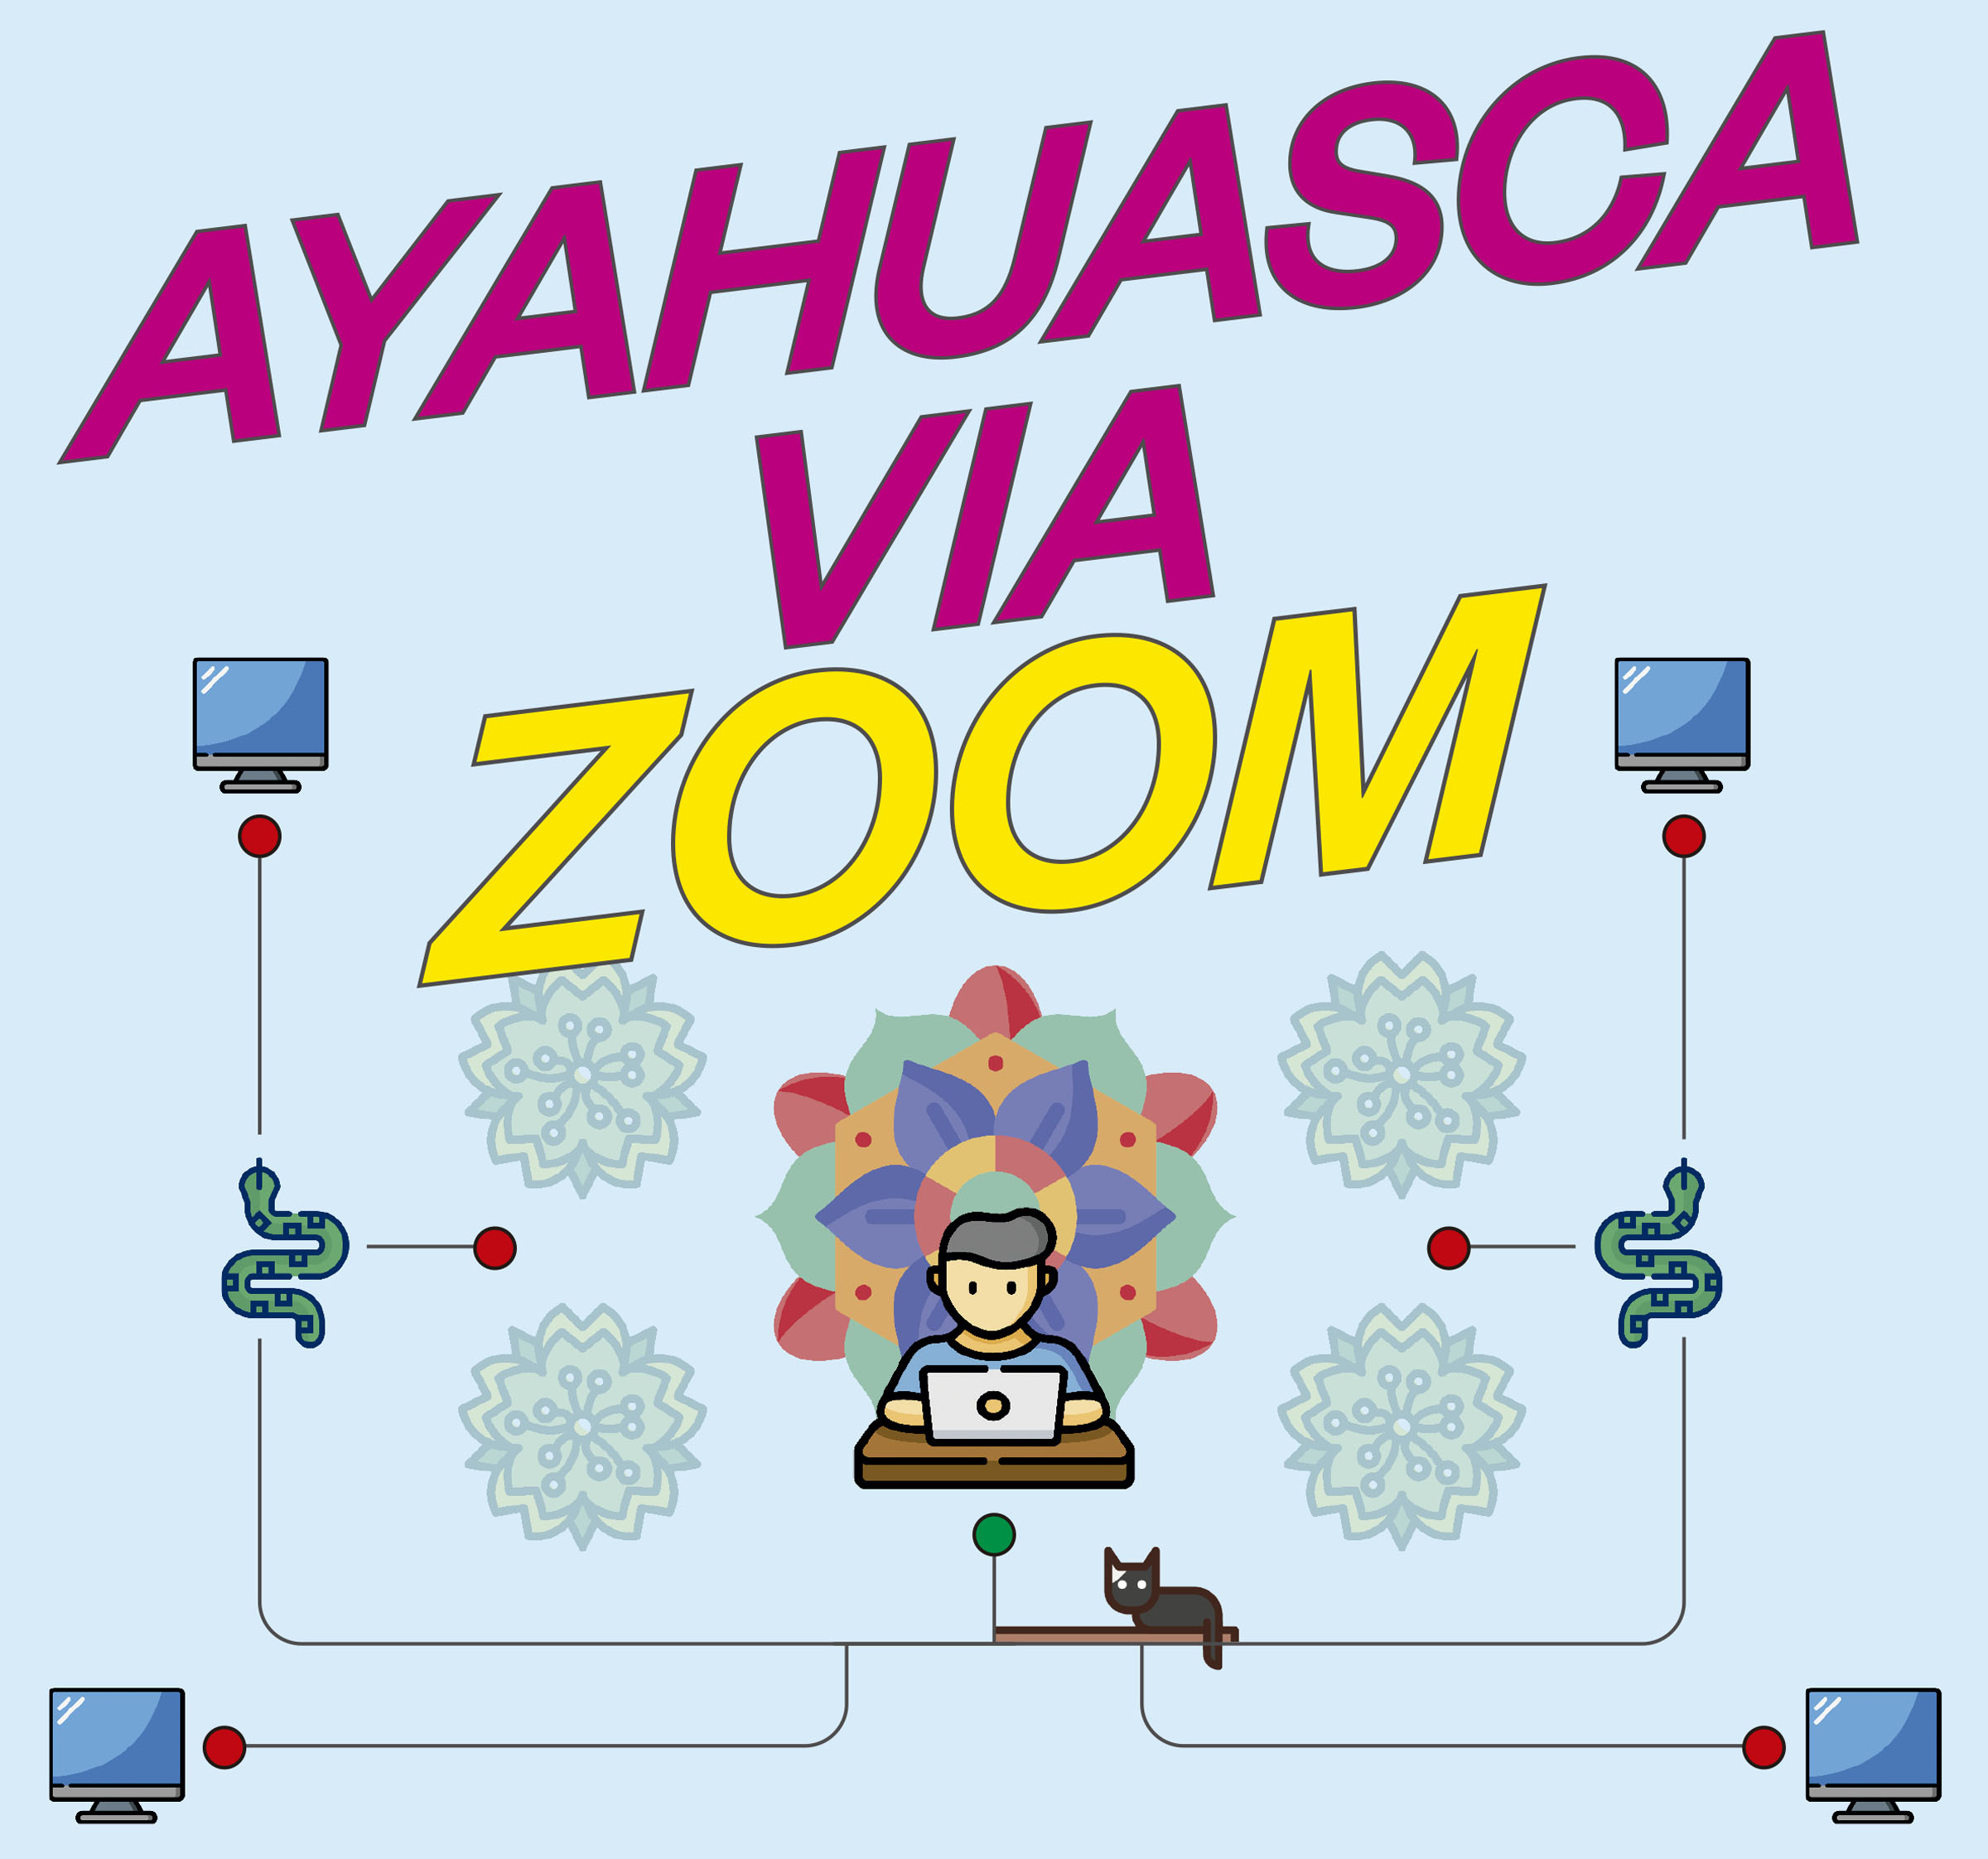 Portada - Ayauasca via zoom